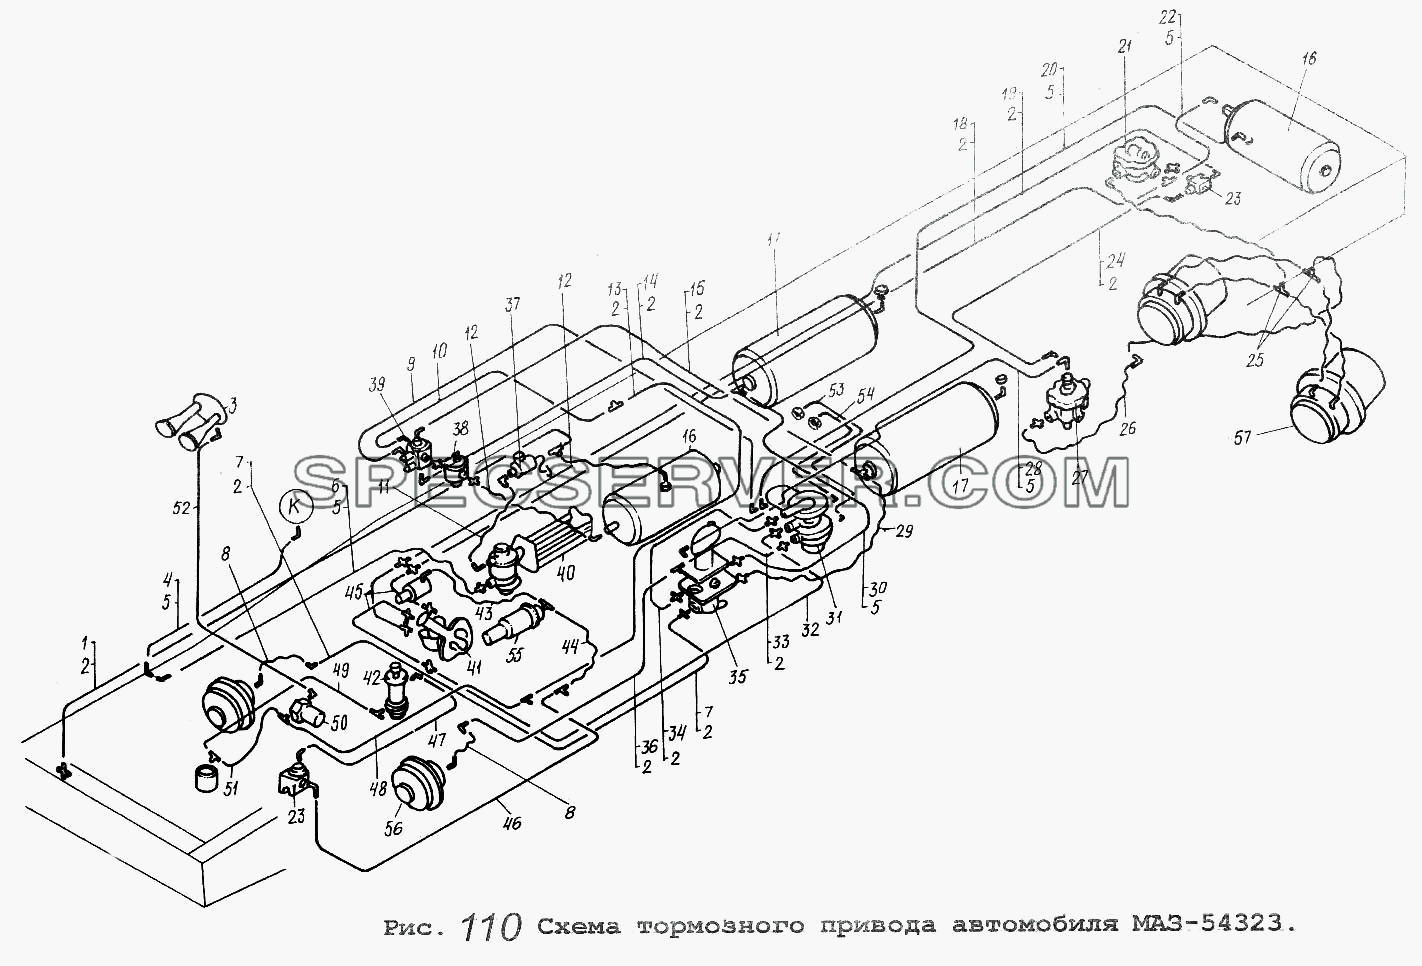 Схема тормозного привода автомобиля МАЗ-54323 для МАЗ-64229 (список запасных частей)